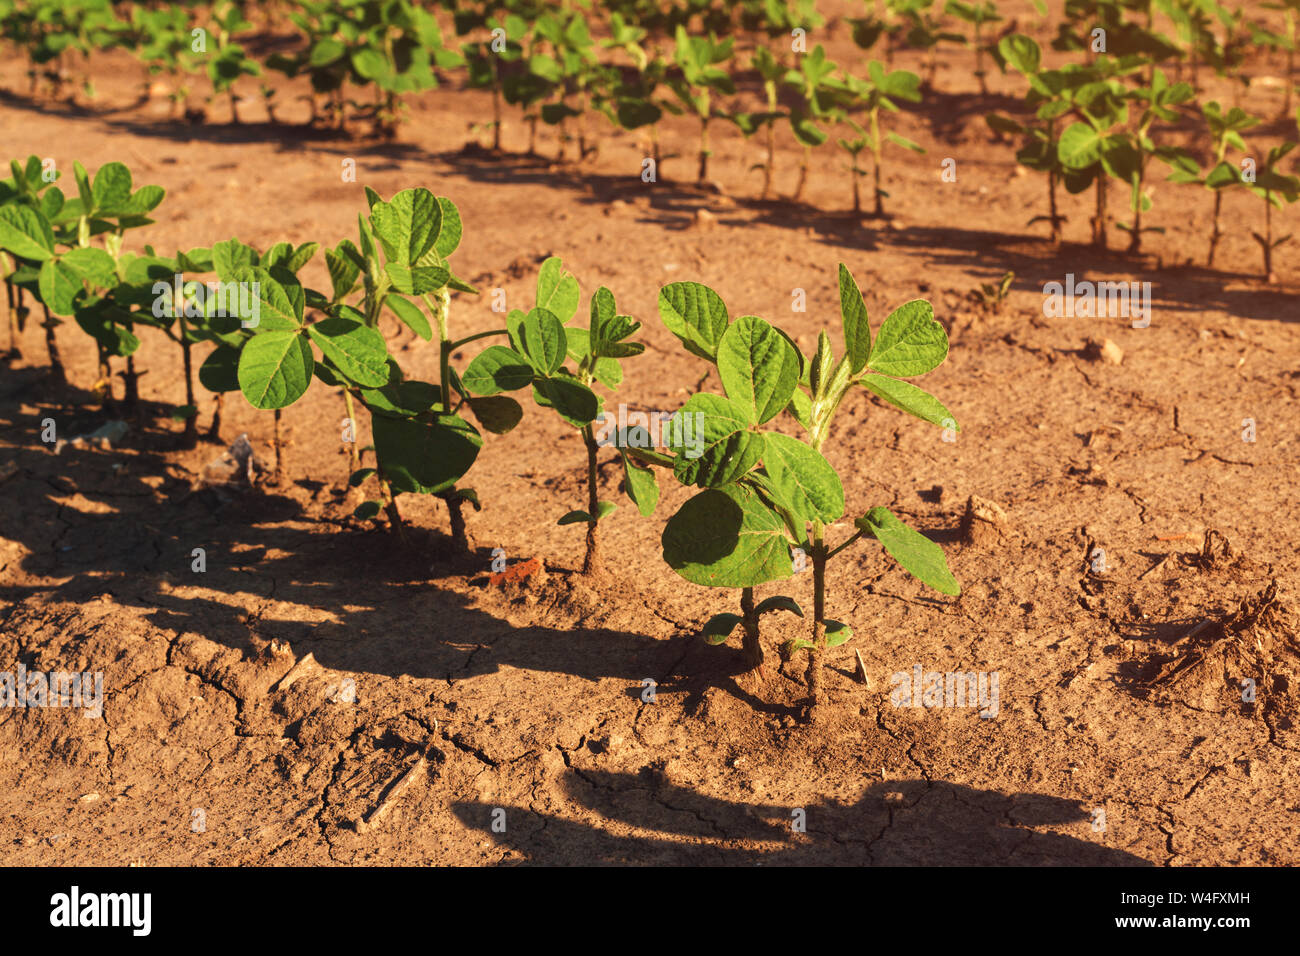 Soja Plantage Zeilen im Feld, der ökologische Landbau von Glycine max oder Sojabohnen Erntegut Stockfoto